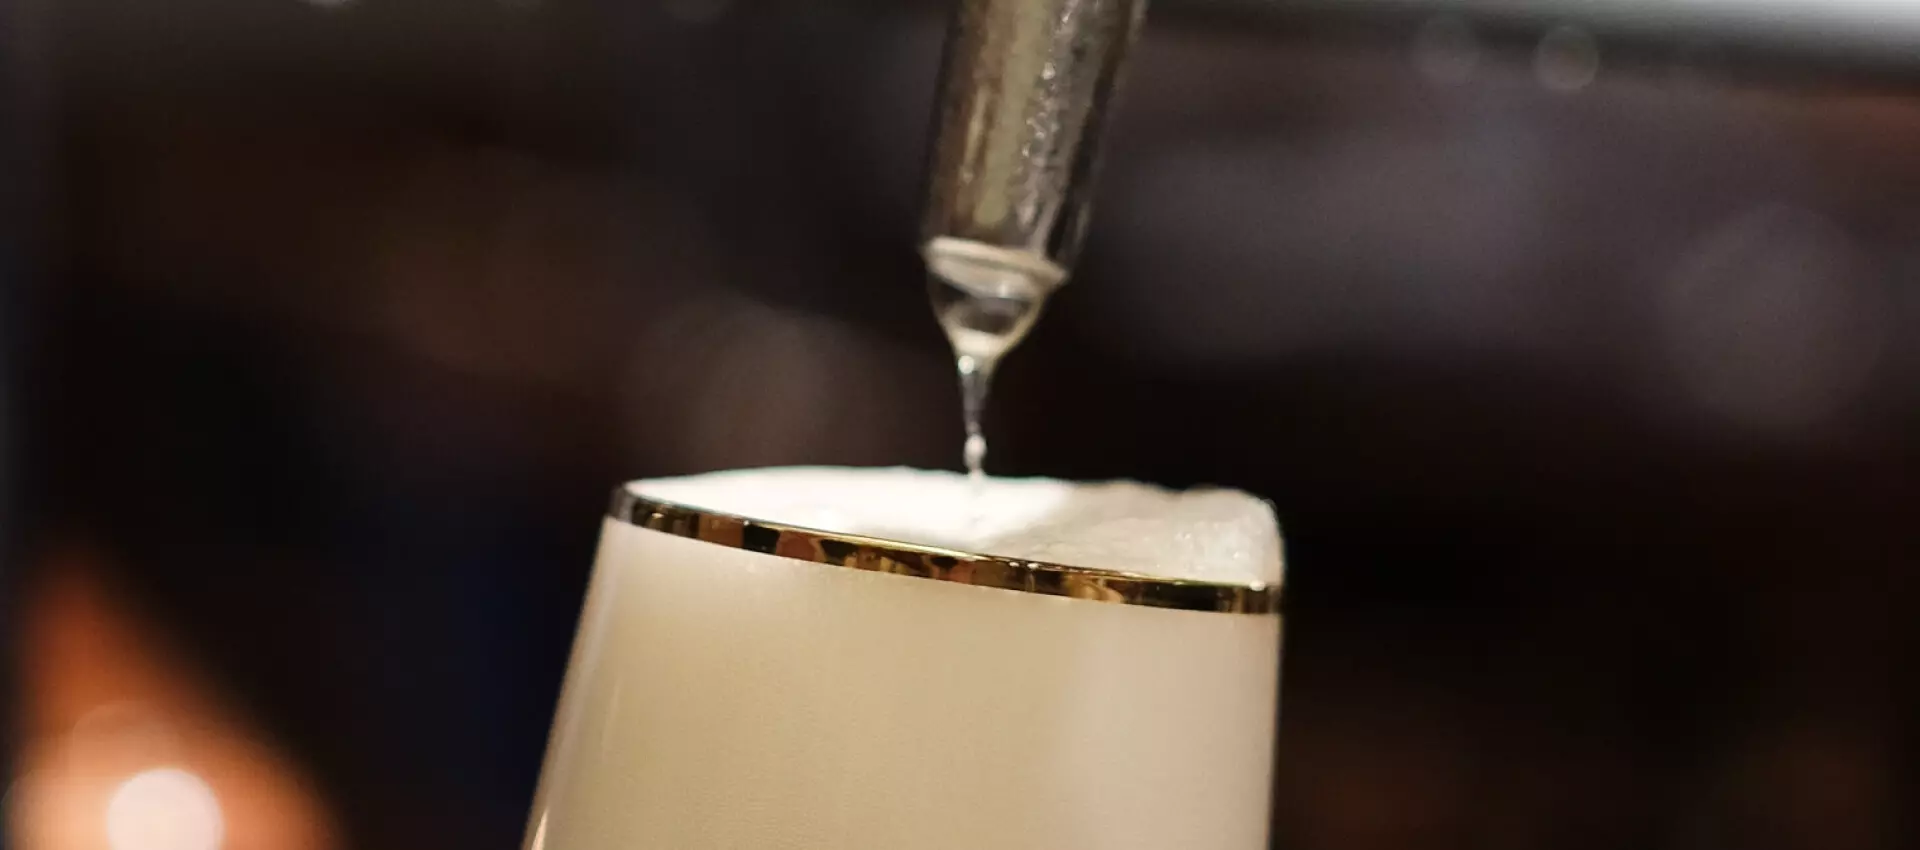 Makroaufnahme vom Zapfhahn und einem Bierglas, ein Tropfen Flüssigkeit fällt auf die üppige Schaumkrone.